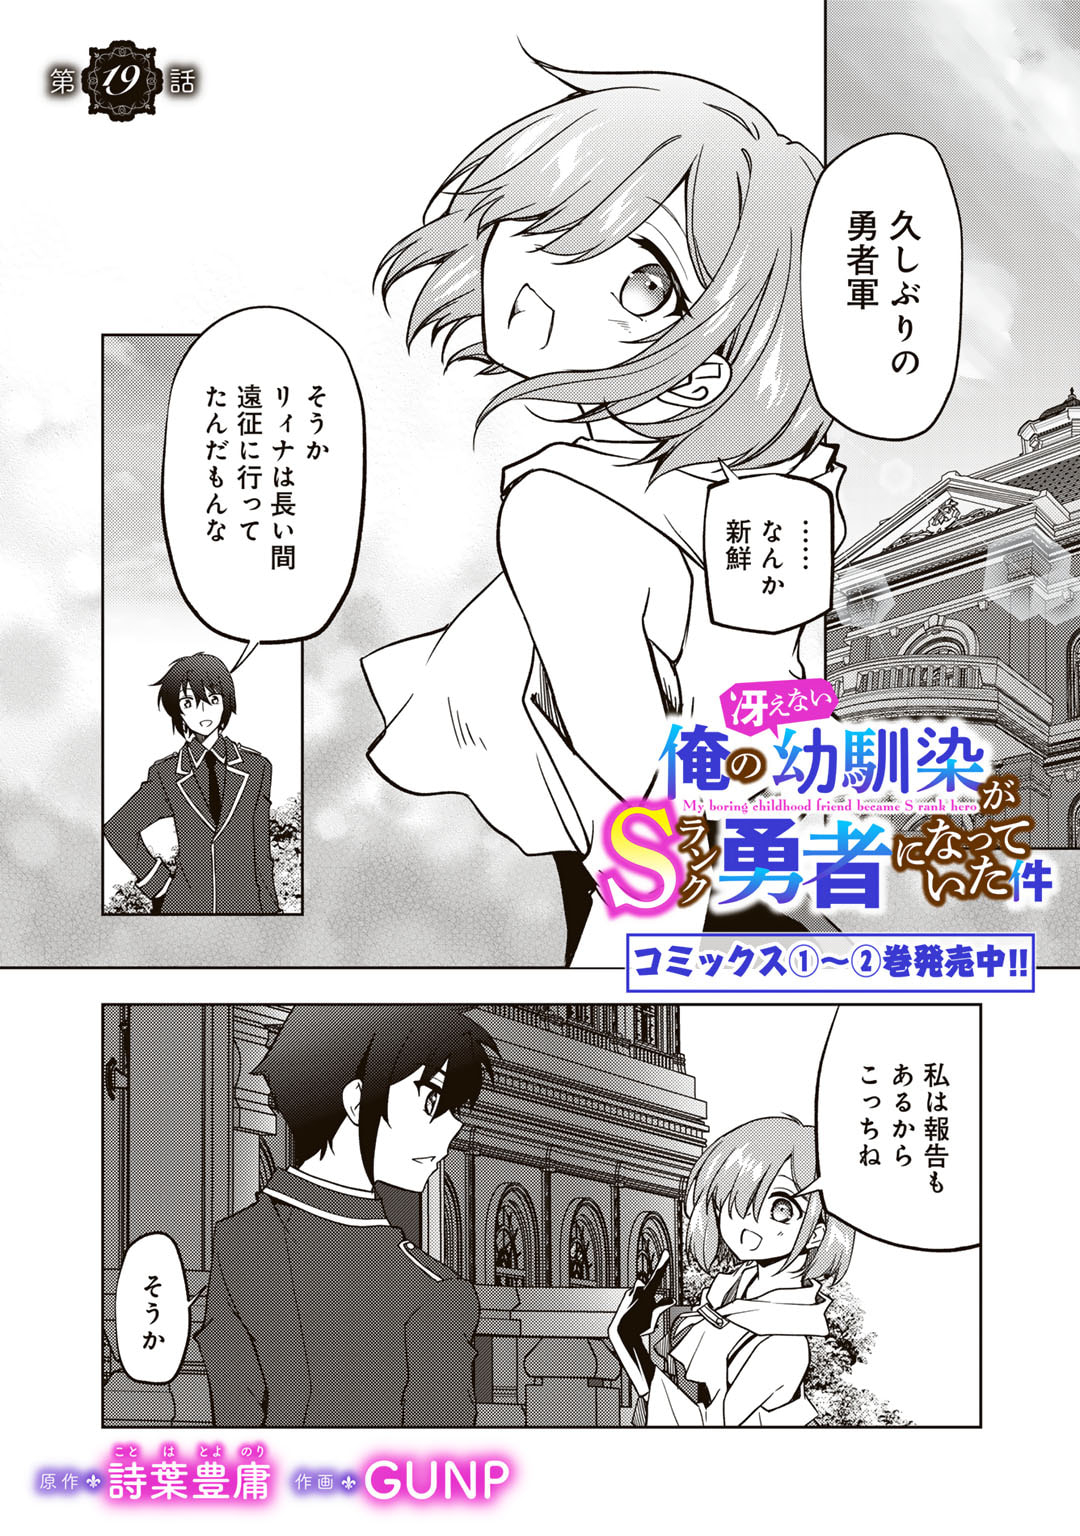 Ore no Saenai Osananajimi ga S Rank Yuusha ni Natte ita ken - Chapter 19 - Page 1